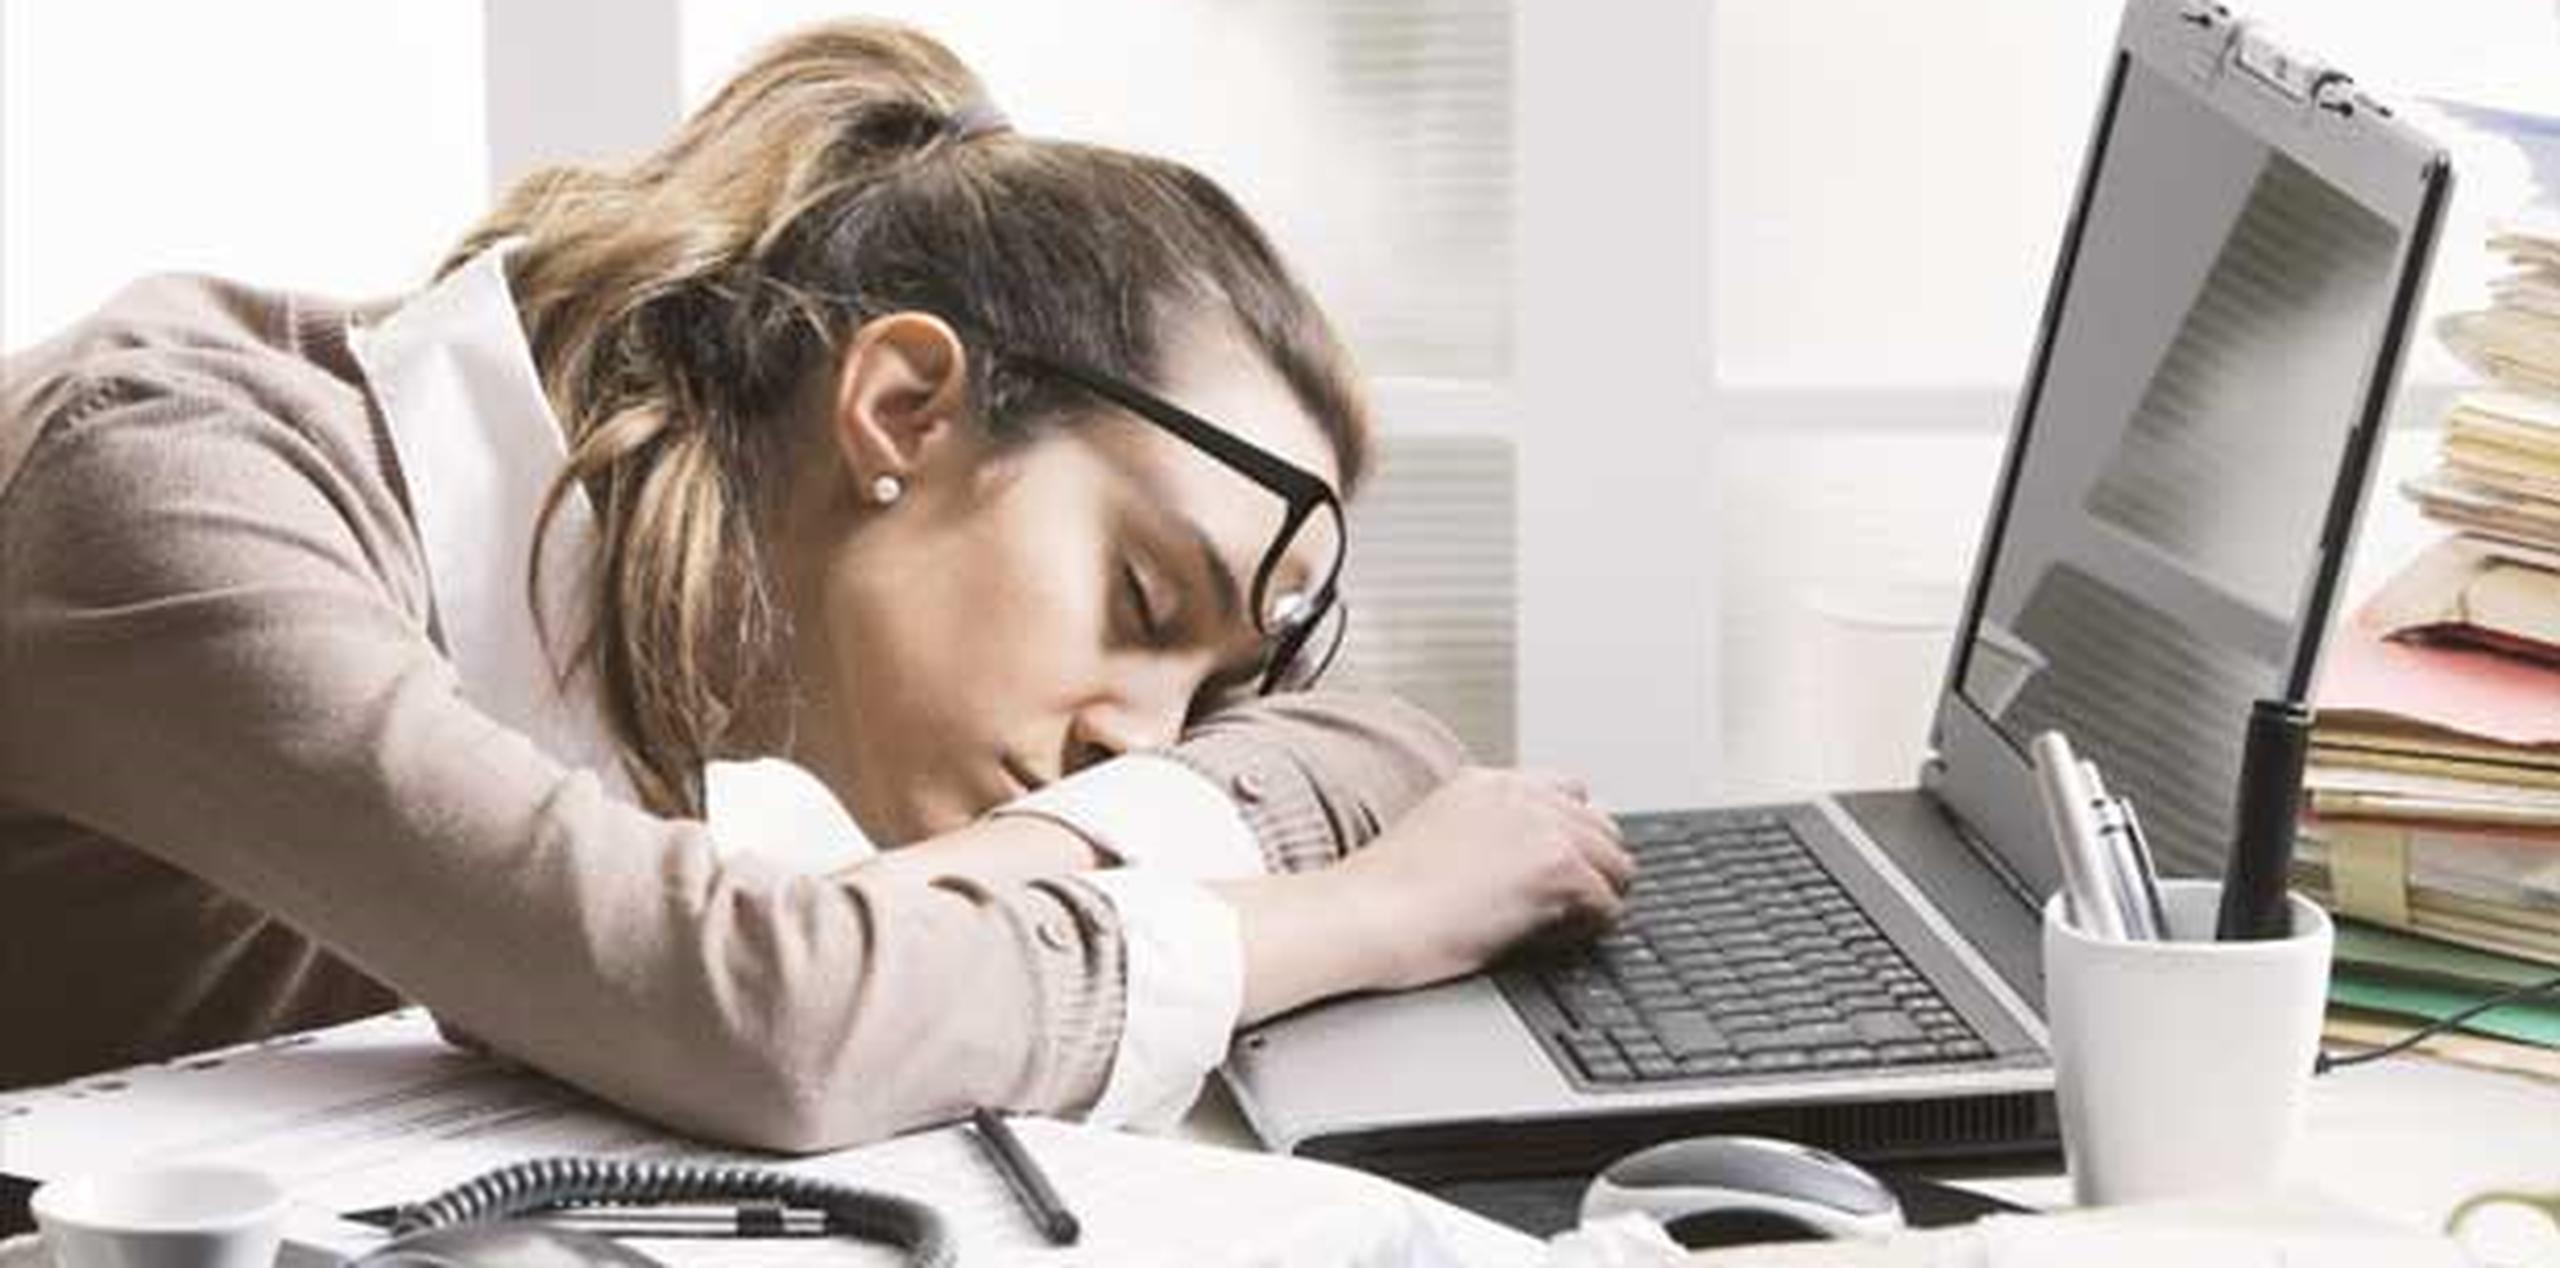 Las personas con hipersomnia se ven obligadas a dormir una siesta varias veces durante el día, a veces en horas y lugares inapropiados como en el trabajo. (Archivo)